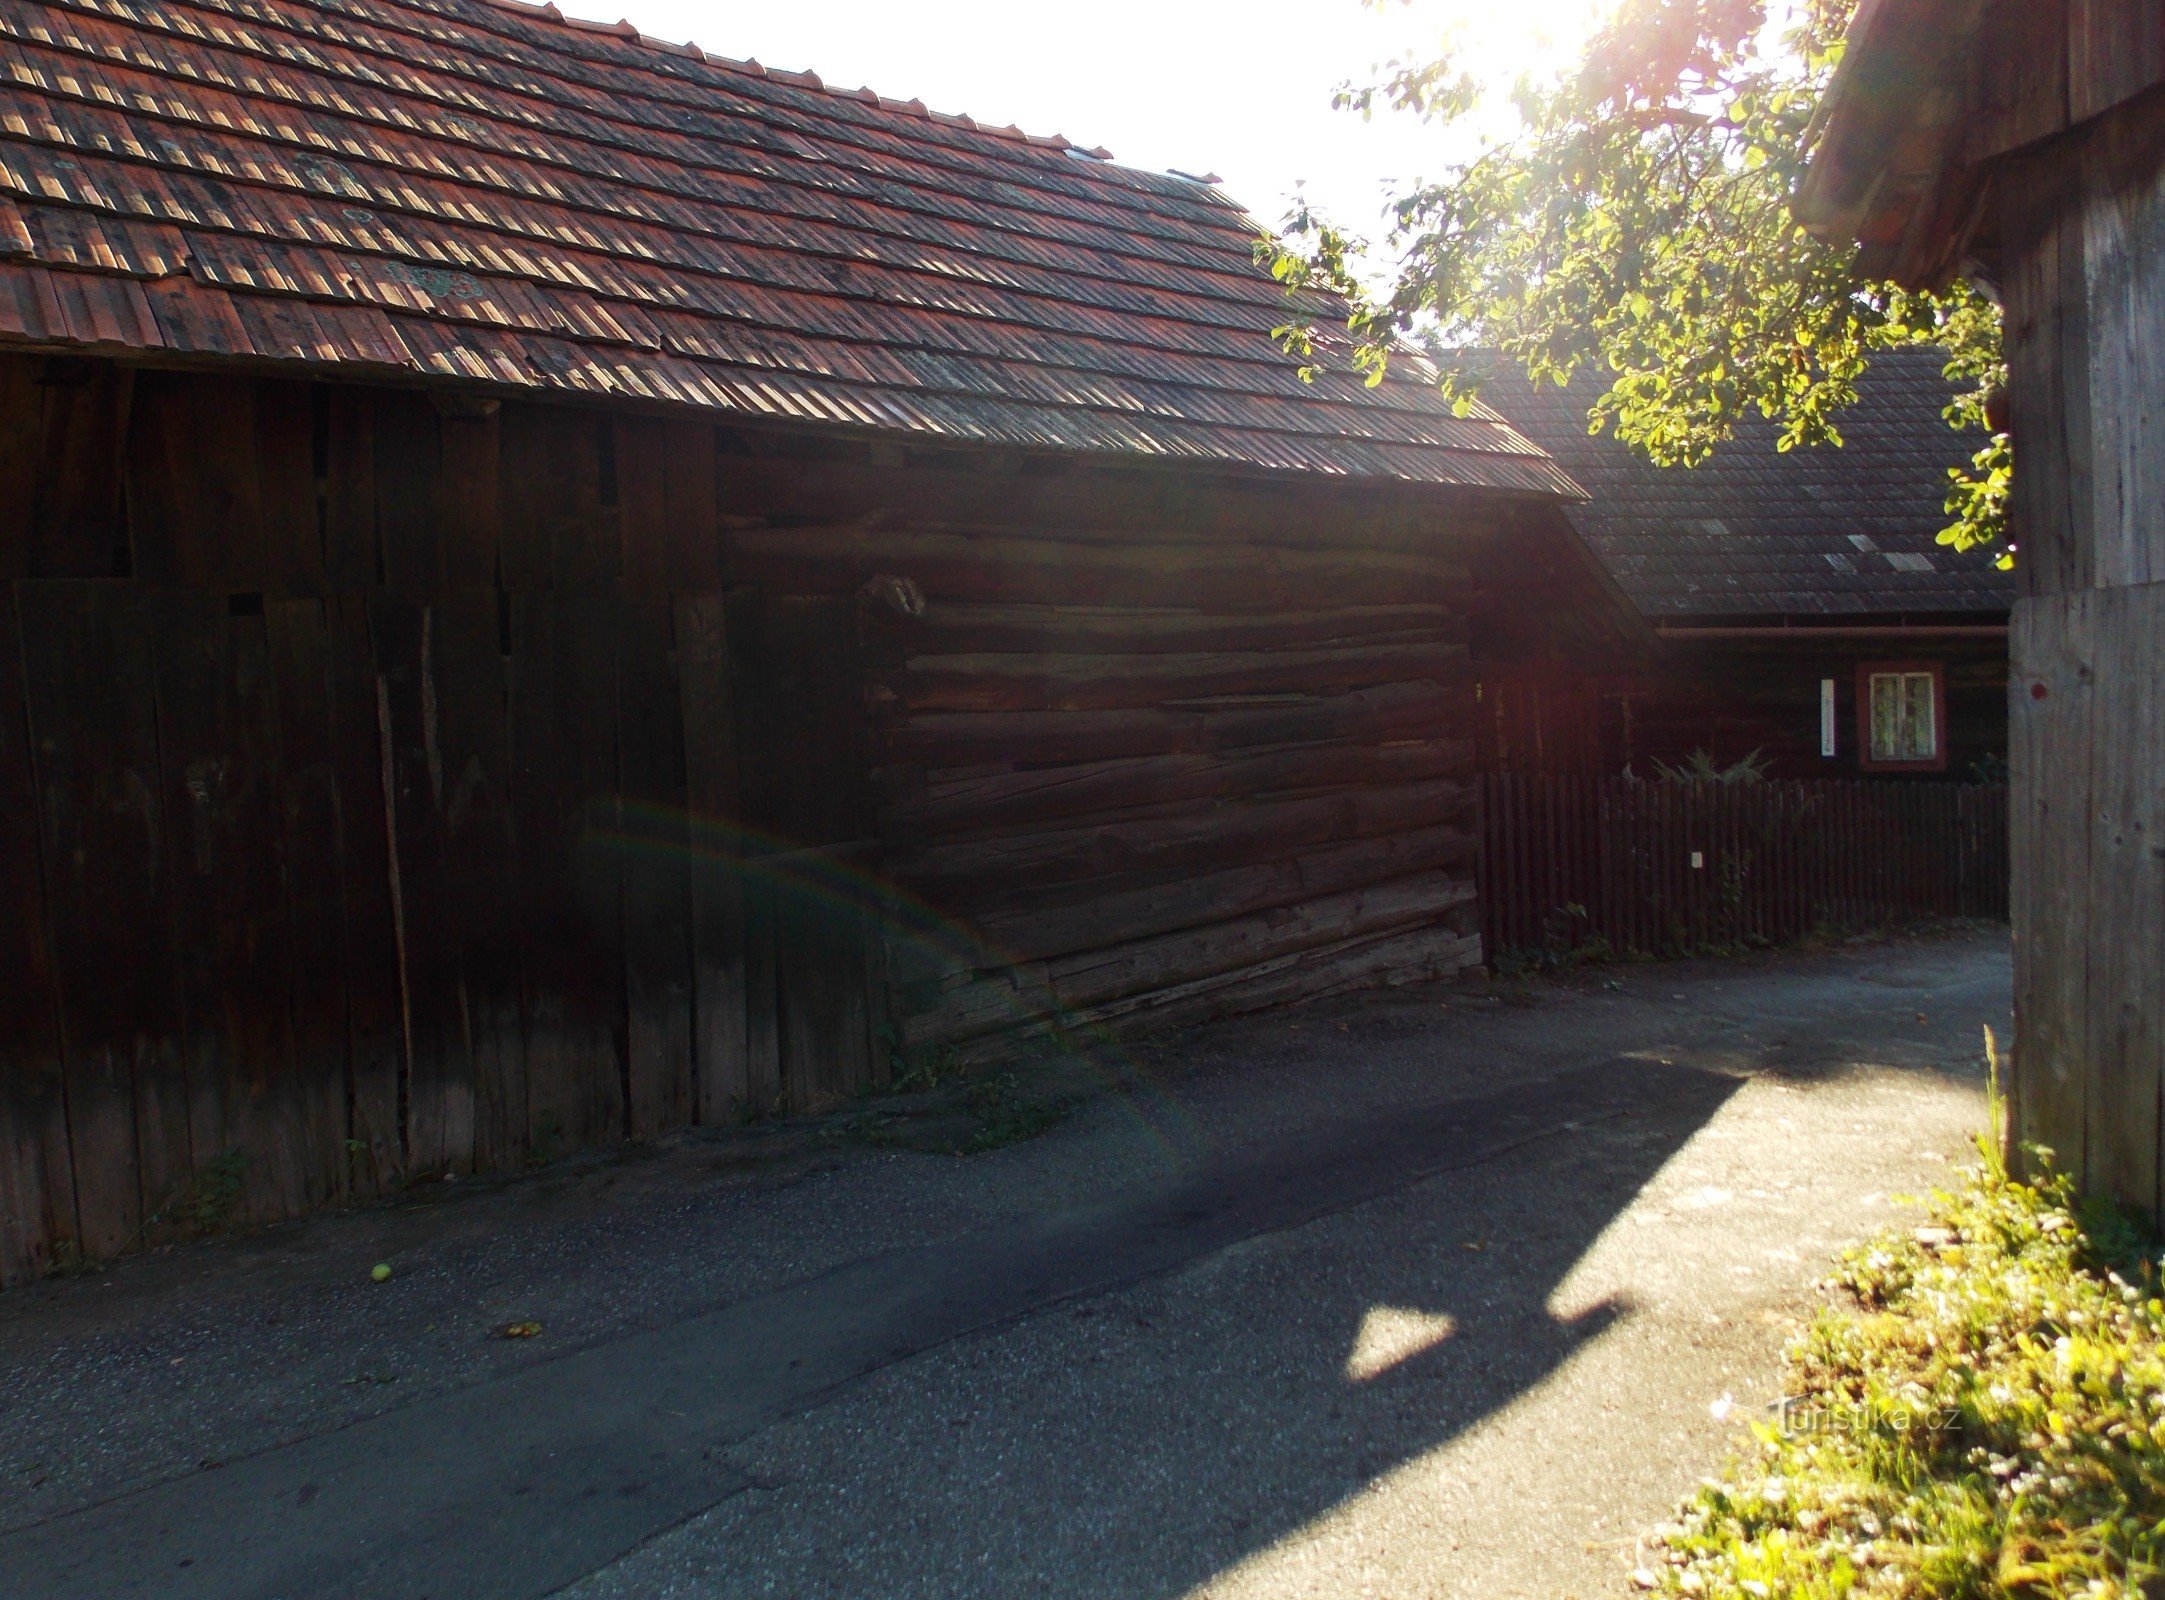 eksempel på folkelig valachisk arkitektur i landsbyen Prlov